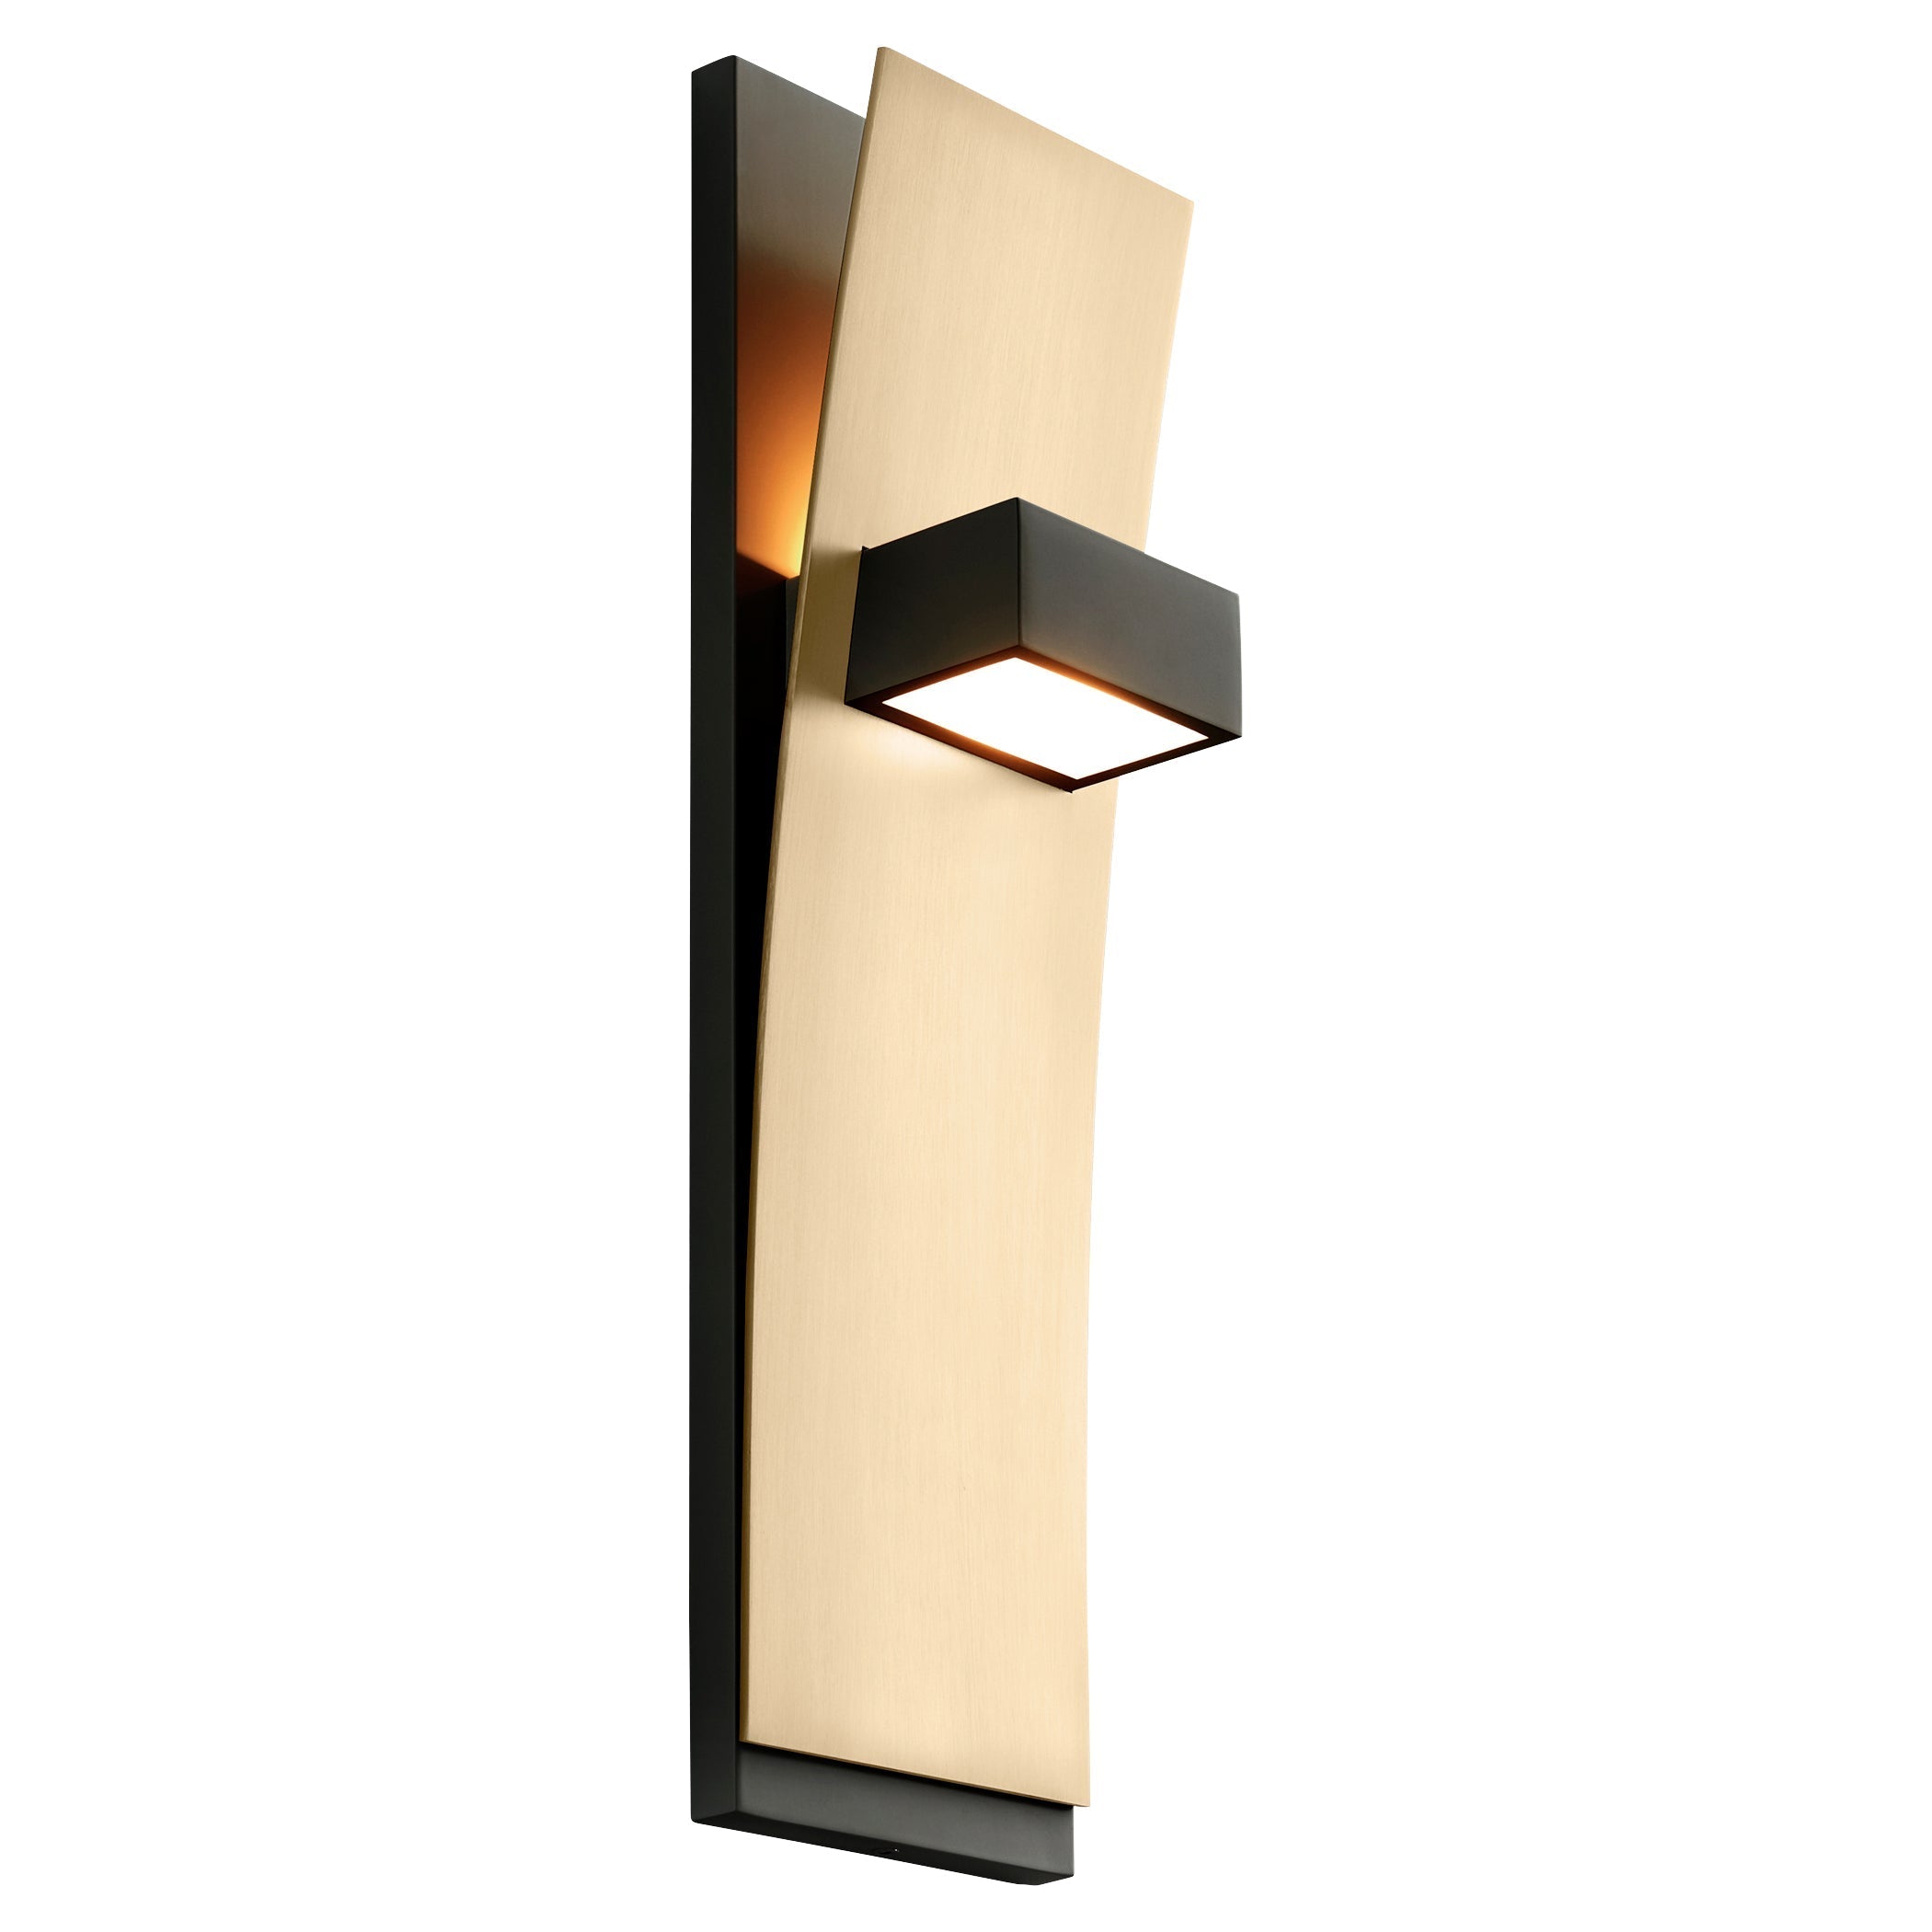 Oxygen DARIO 3-400-1540 Wall Light Fixture - Black, Aged Brass